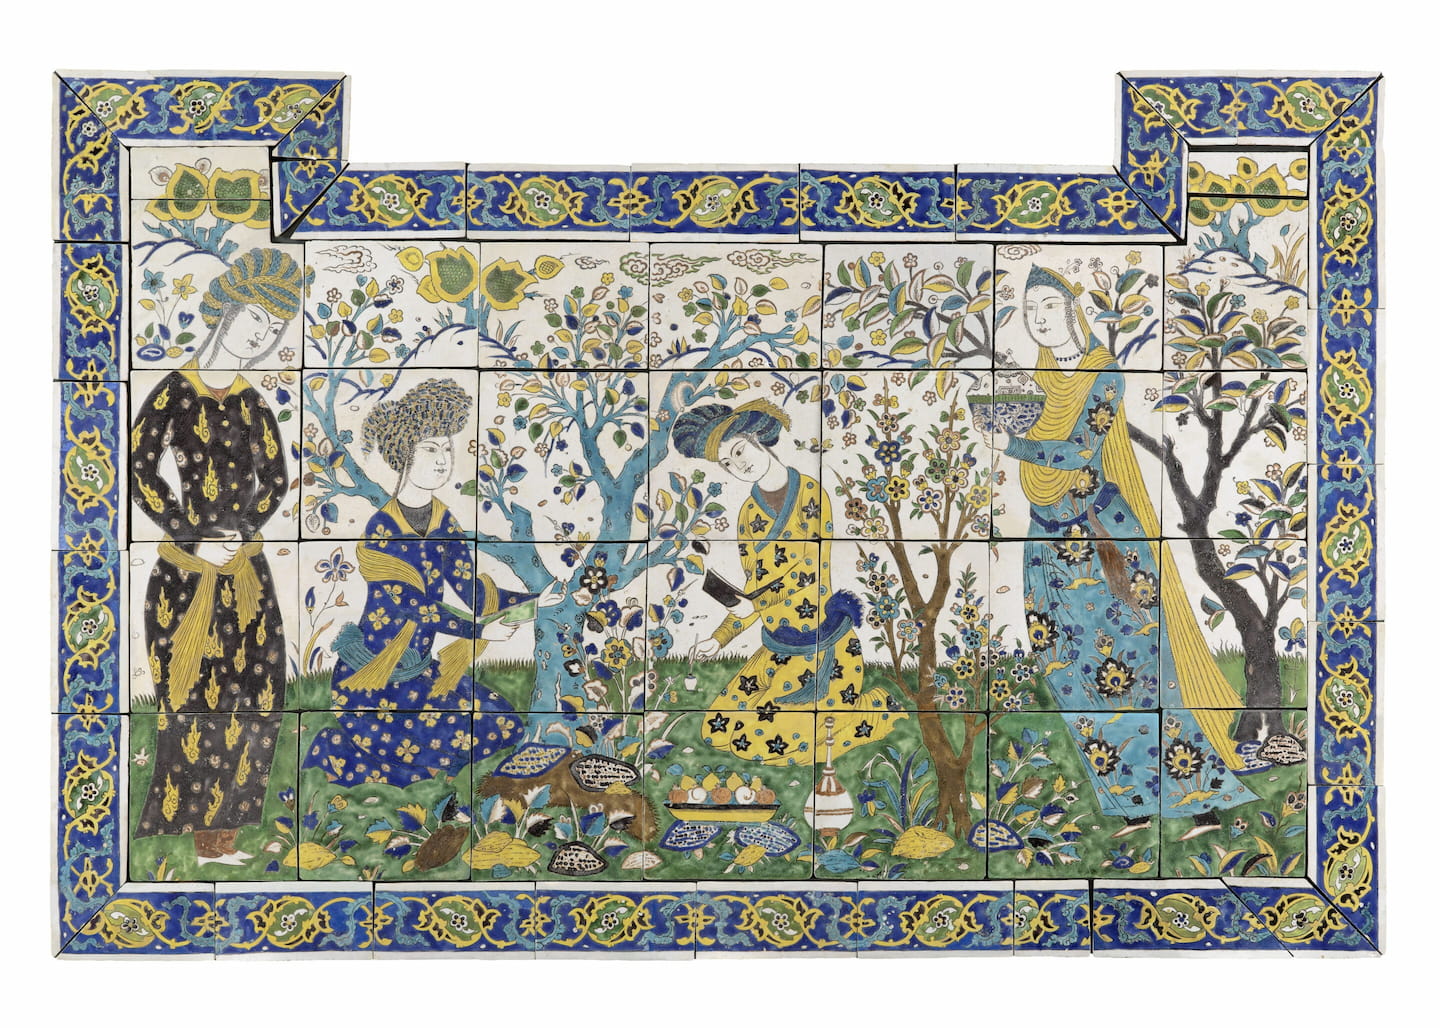 Panneau de revêtement à la Joute poétique Iran, Ispahan XVIIe siècle Céramique 175,7 x 118 x 6 cm © Musée du Louvre, Dist. RMN-Grand Palais / Raphaël Chipault